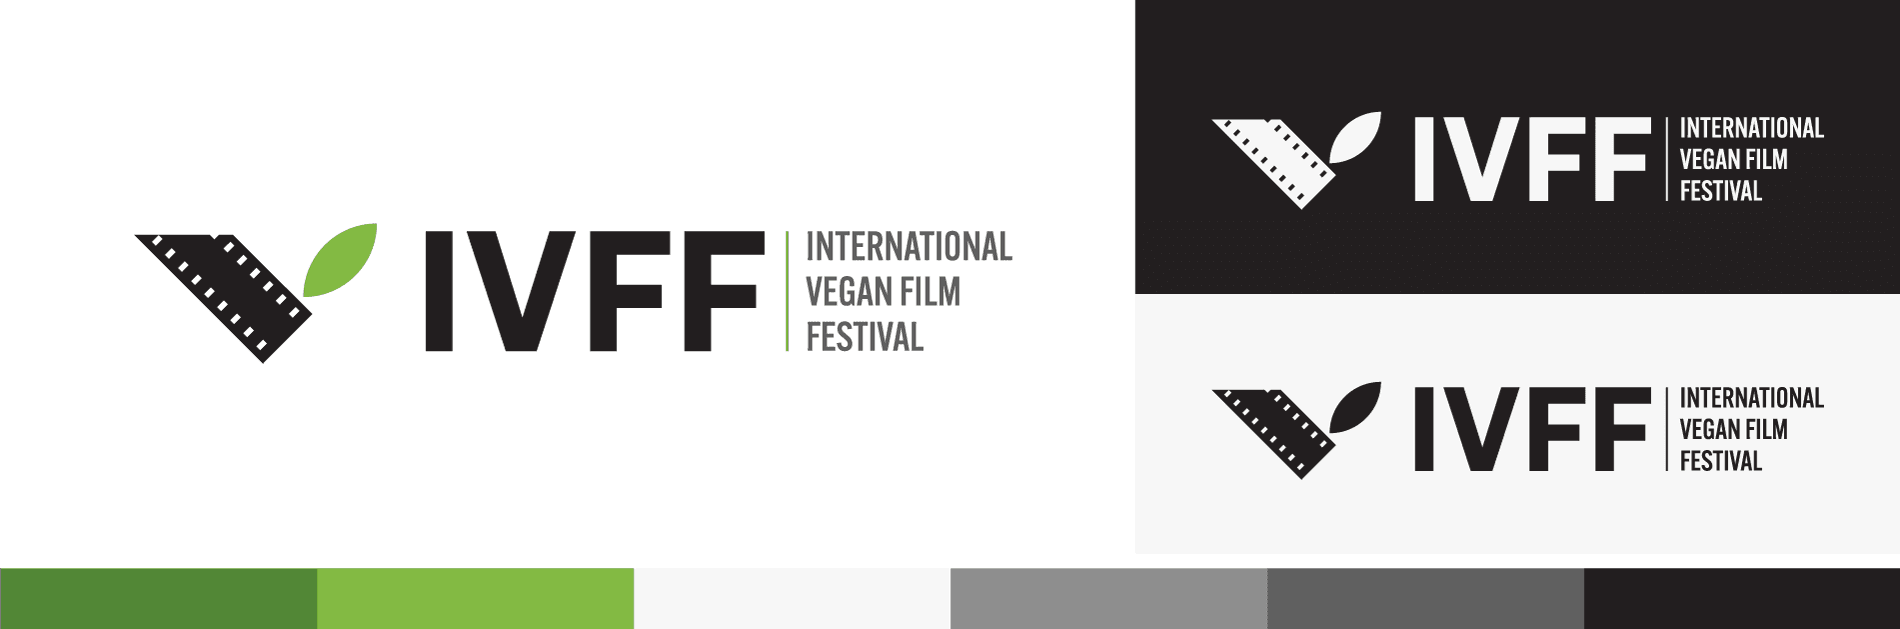 International Vegan Film Festival design